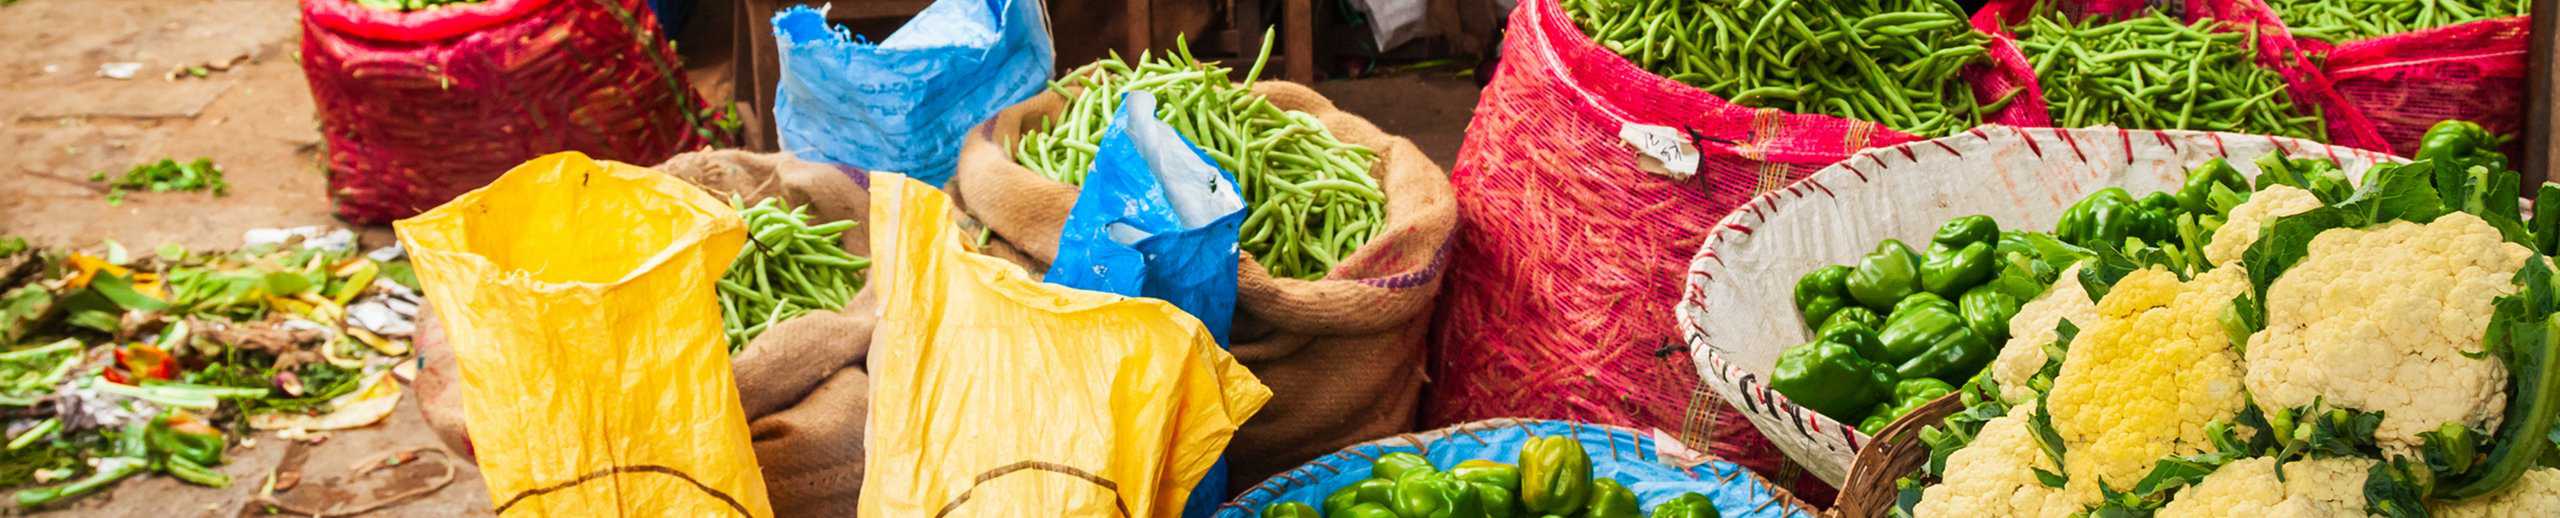 Indischer Markt mit vielen unterschuedkichen Gemüsesorten